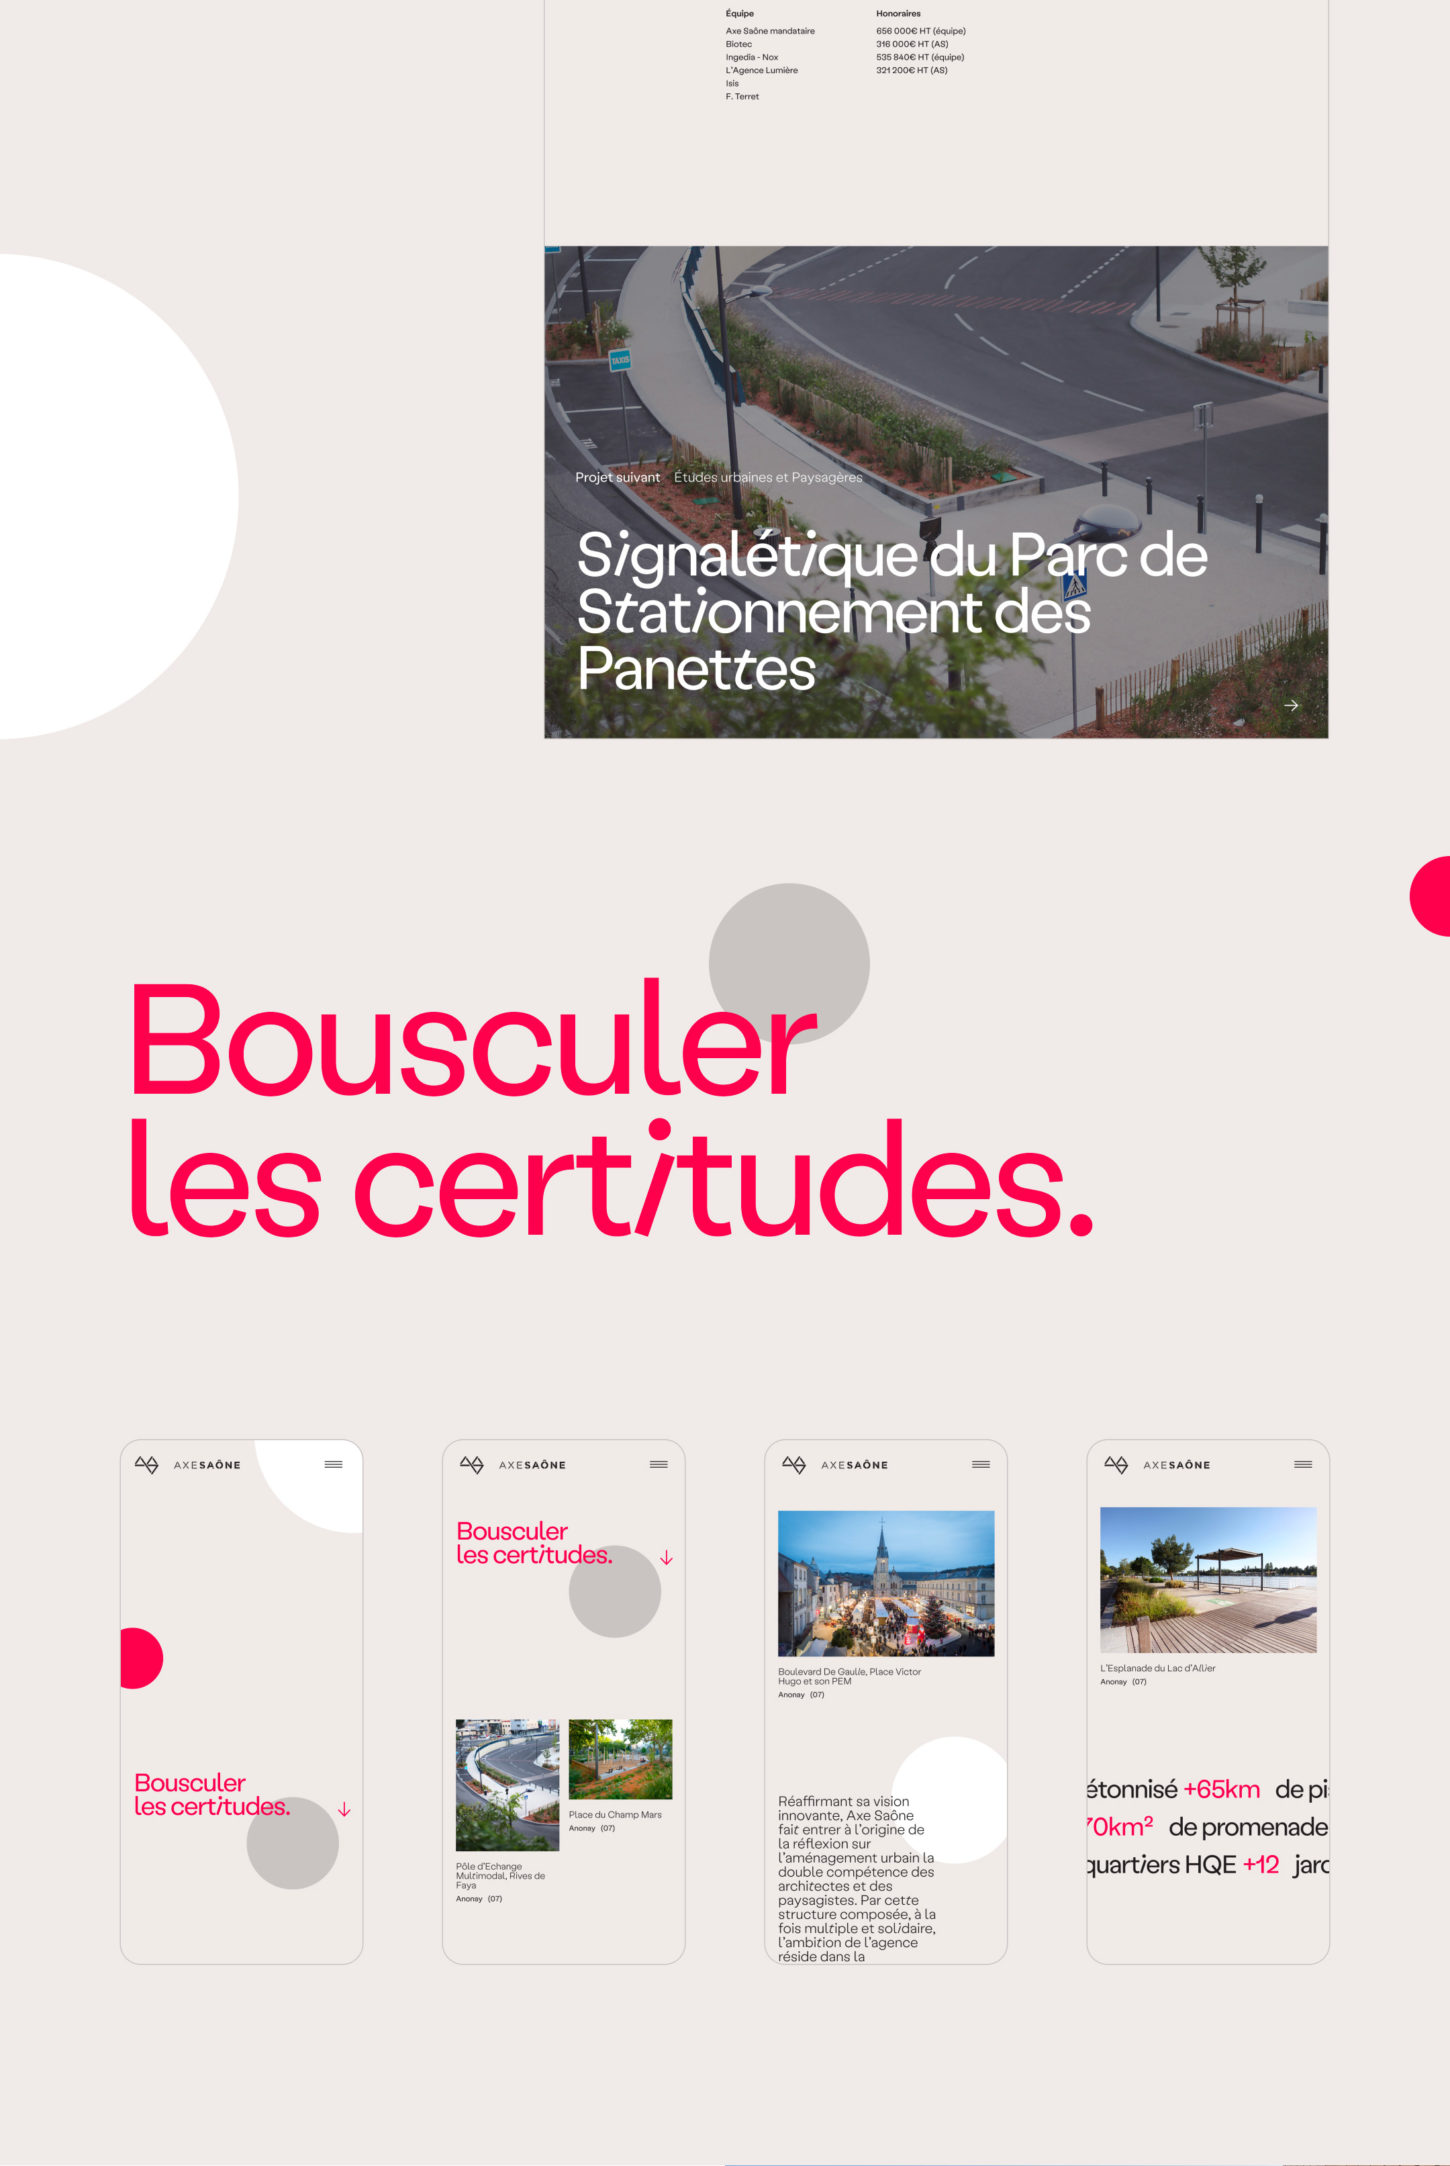 Création du site internet de l'agence d'architecture Axe Saone à Lyon